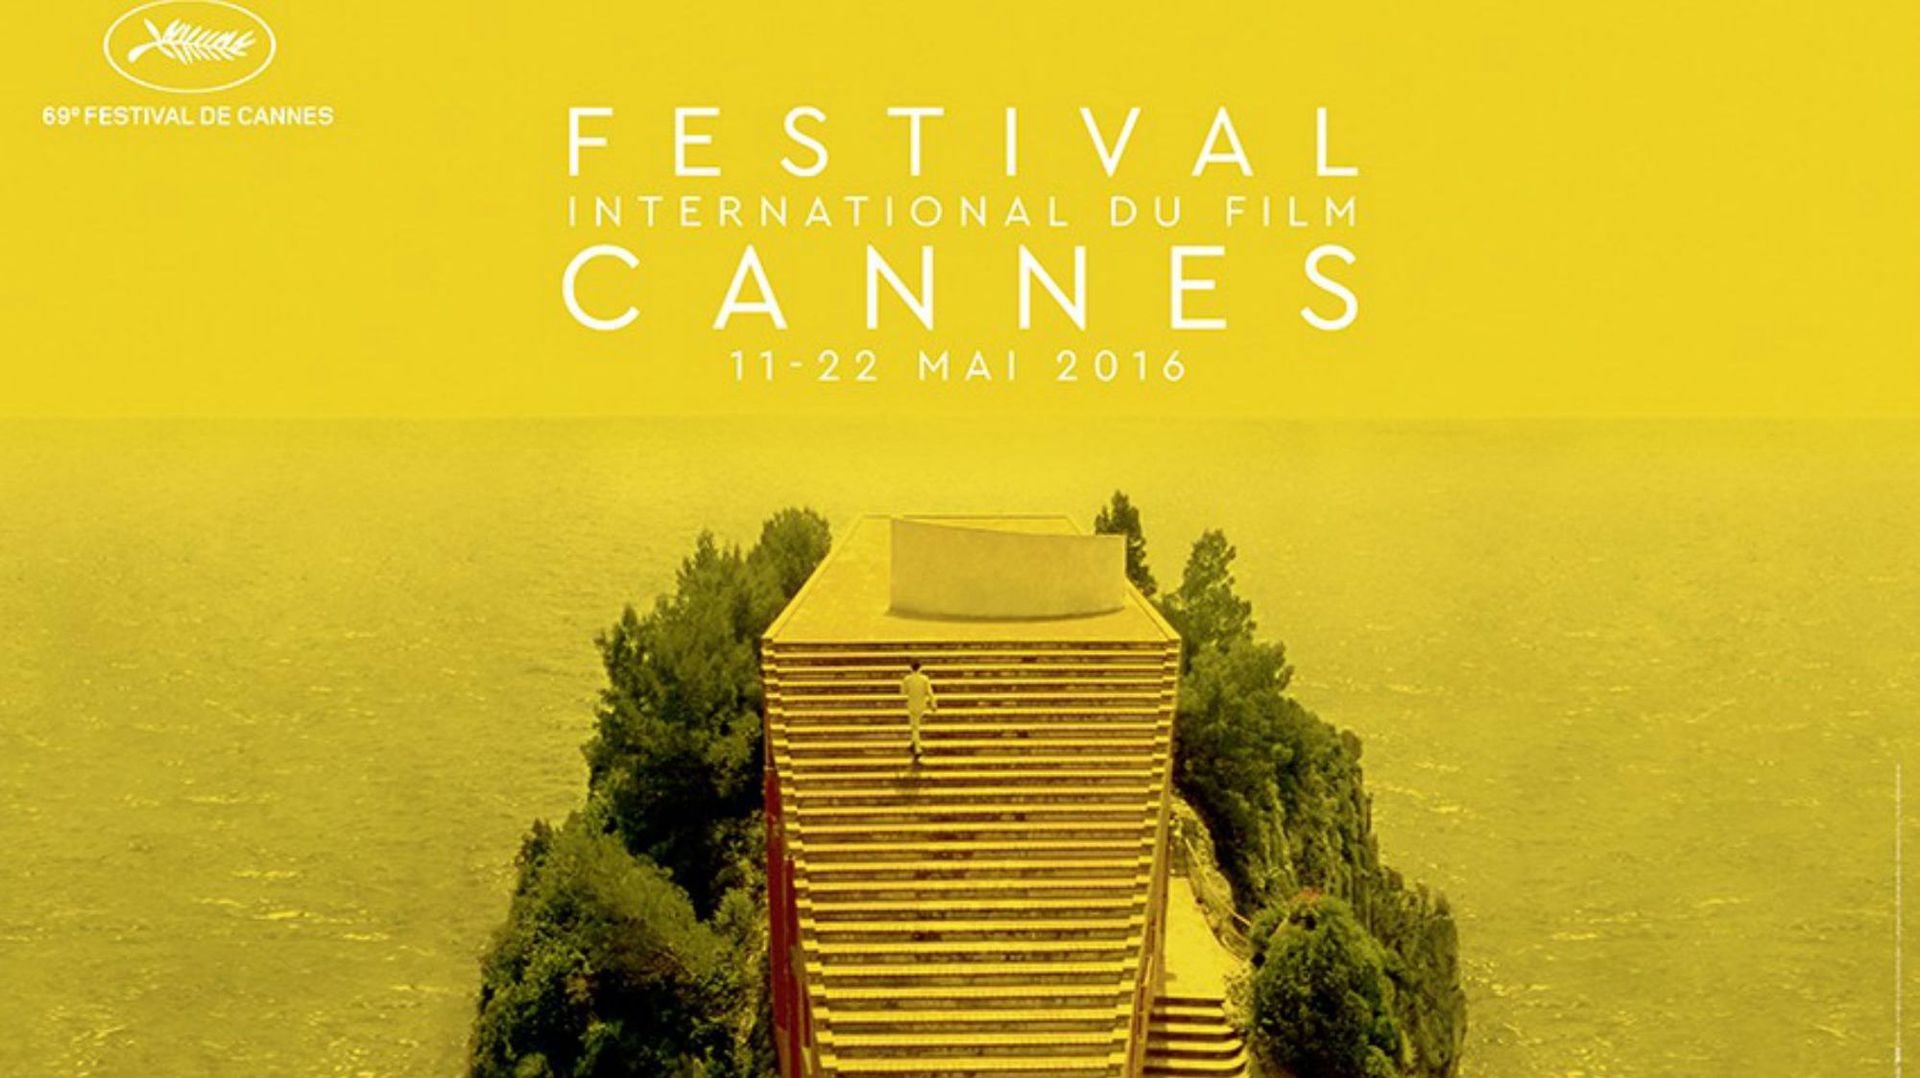 Le rideau se lève sur la sélection du 69e Festival de Cannes